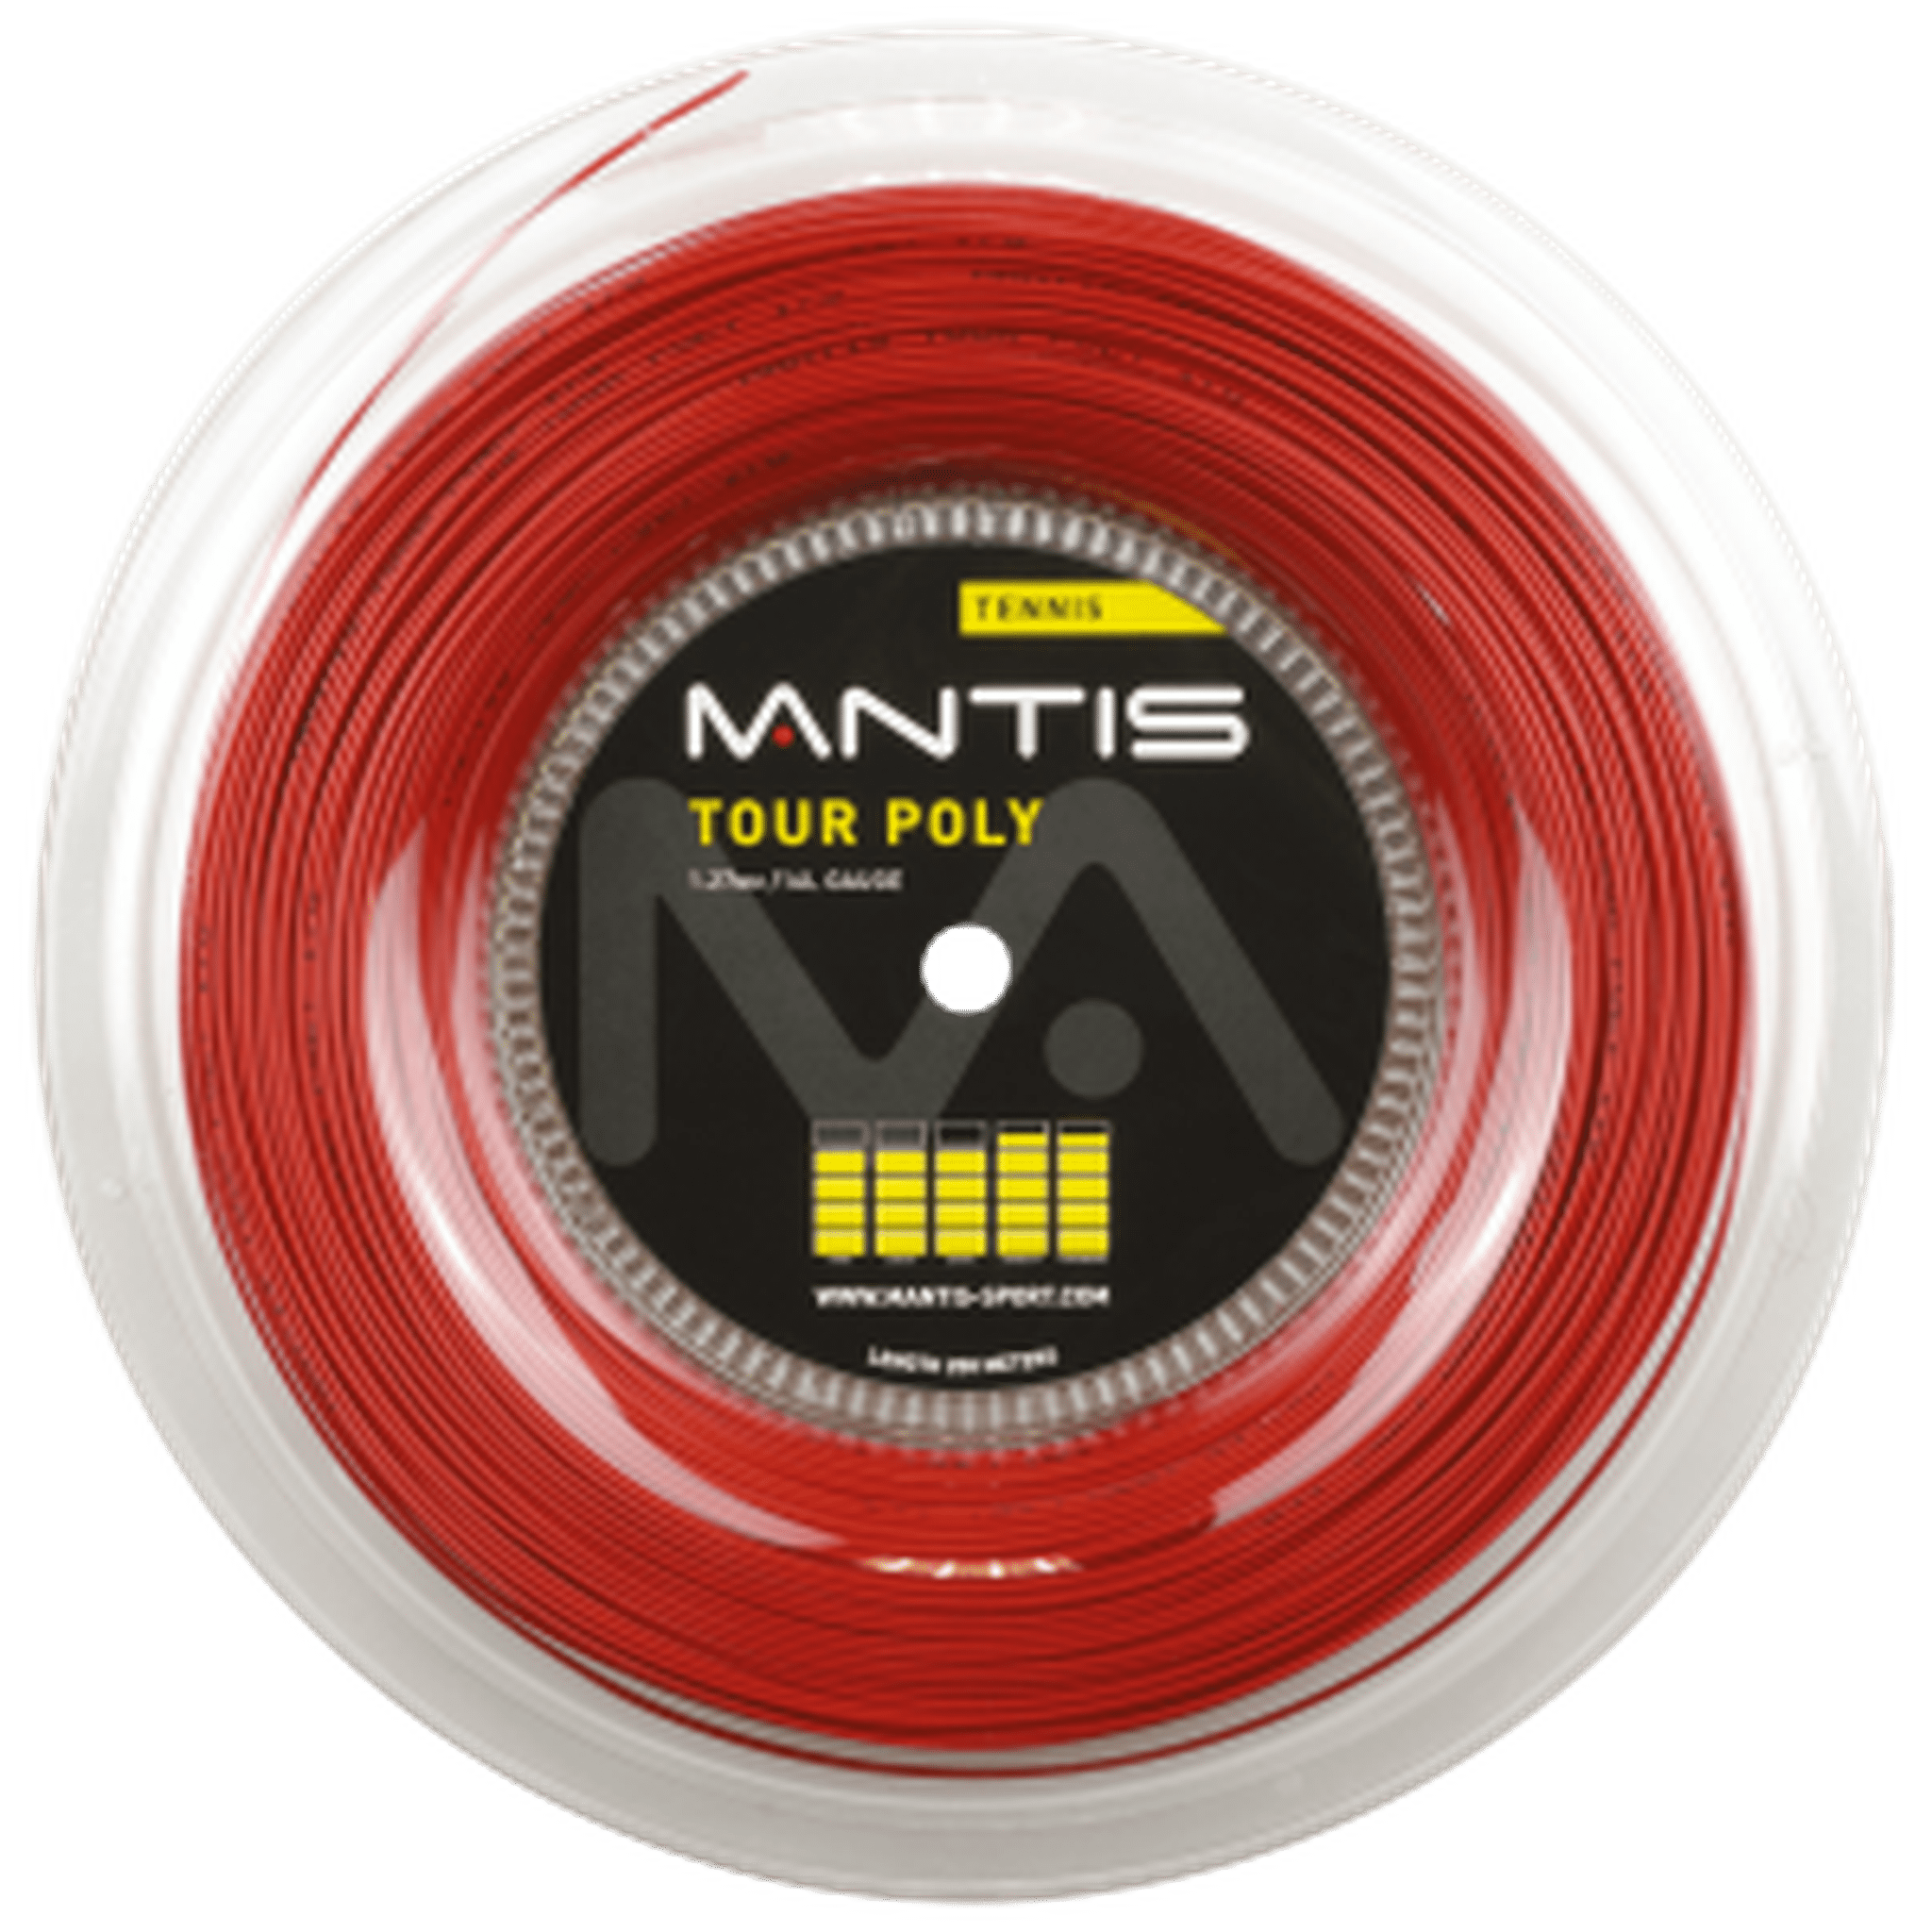 MANTIS Tour Polyester String 17 gauge - Reel 200m